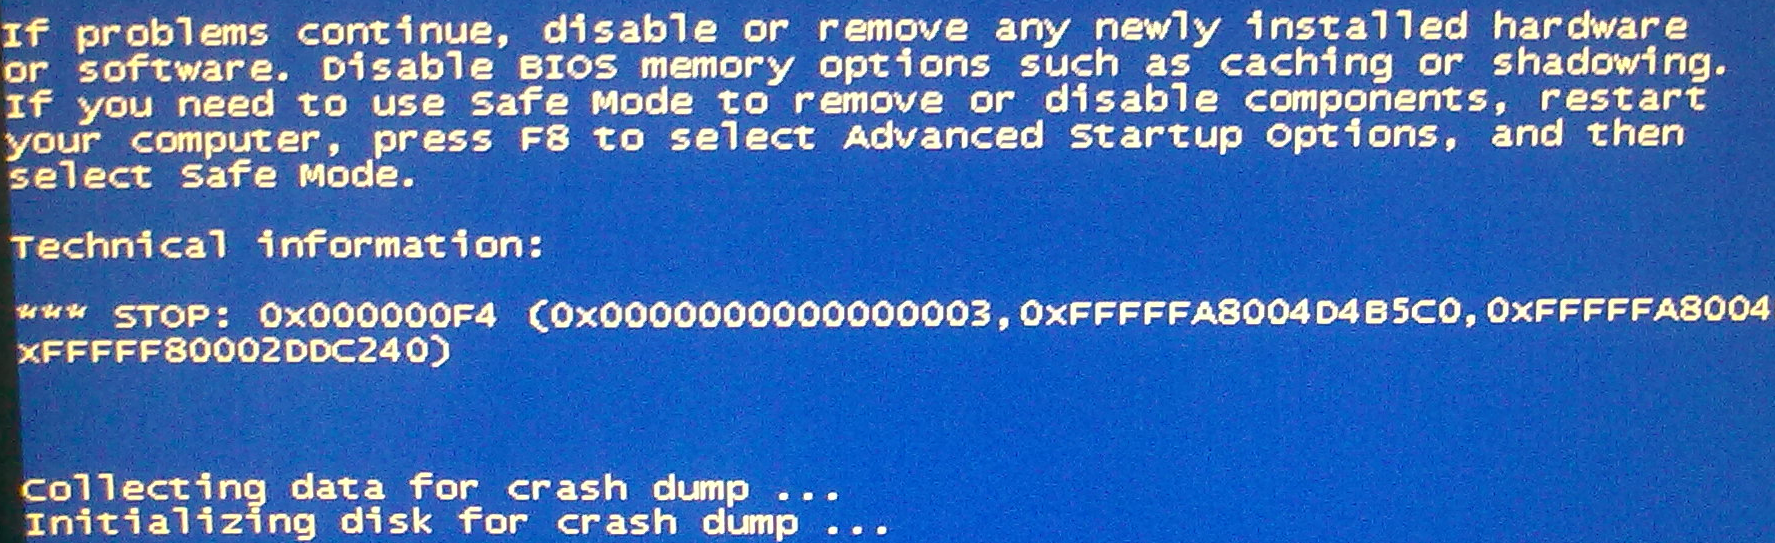 Устранить причины ошибки 0x000000f4 в Windows 7 можно с помощью диагностики оперативной памяти и диска, настройки обновлений или проверки компьютера на вирусы